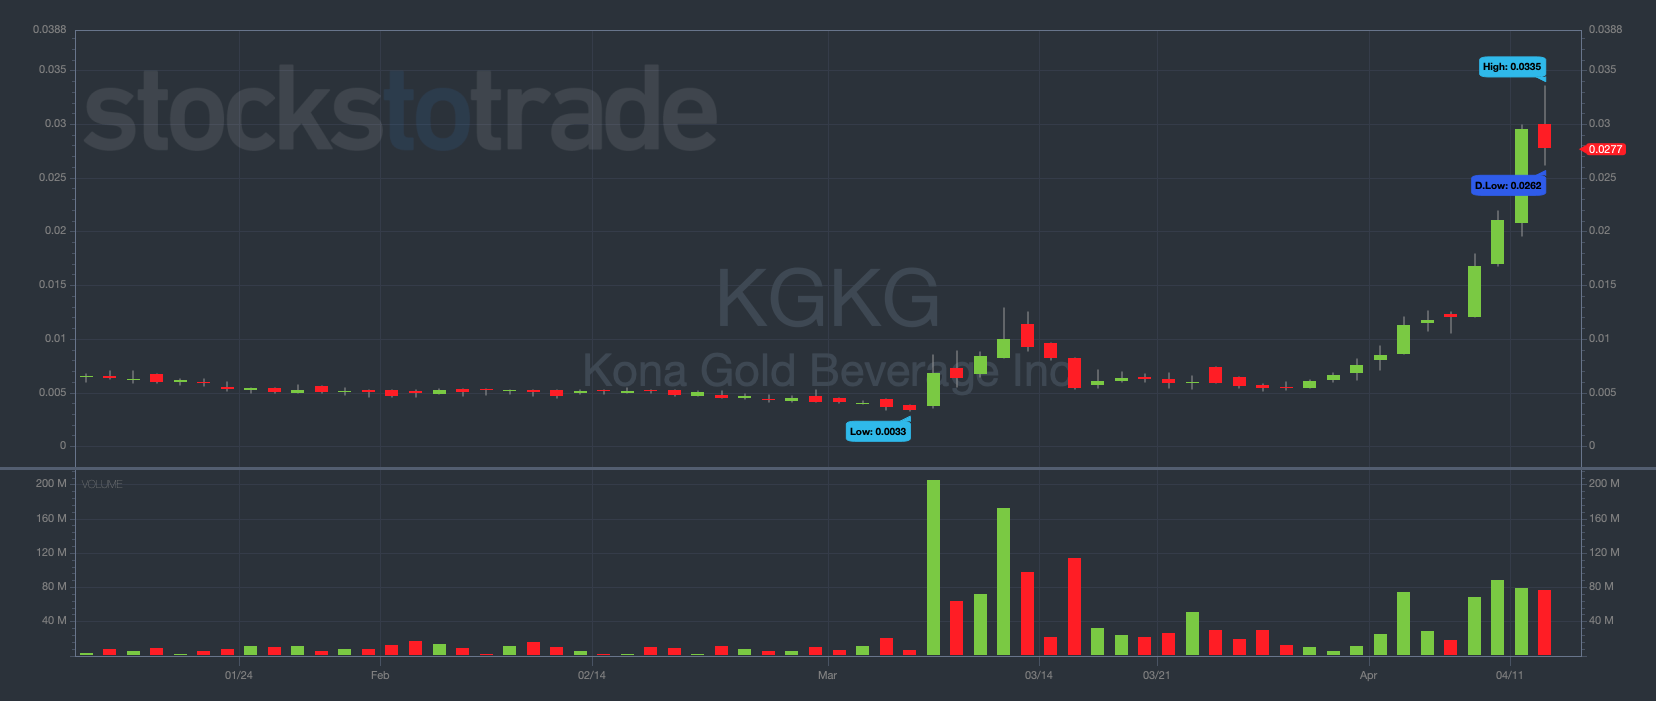 KGKG stock chart